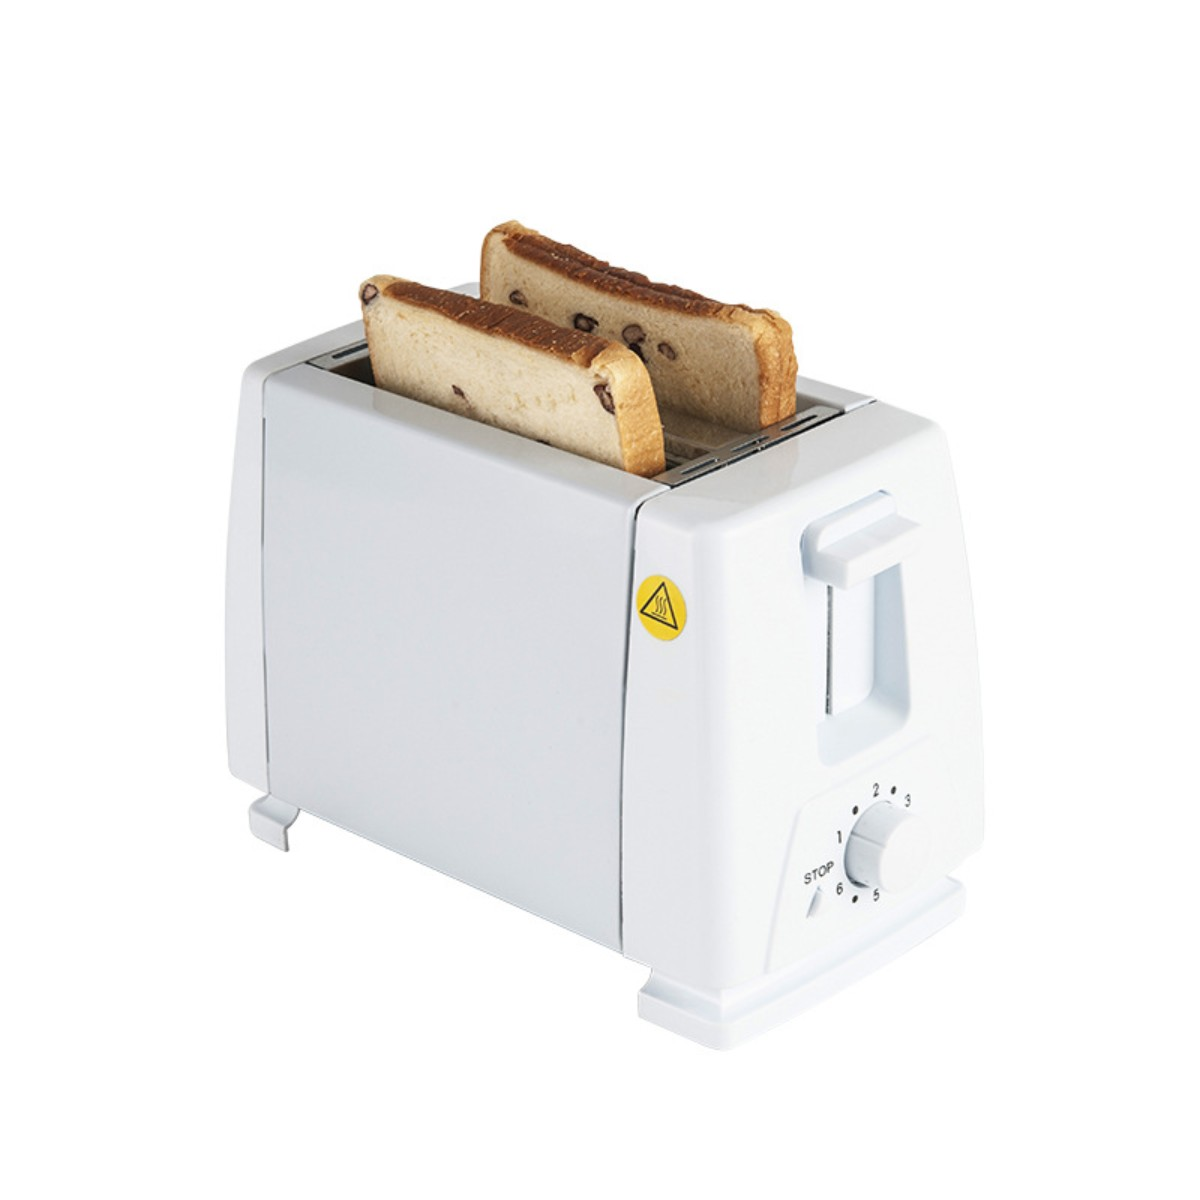 (750 Frühstück Treiber Maschine Toaster Schlitze: Toaster SYNTEK Maschine Sandwich Watt, Schwarz 2) schwarz Toaster Brot